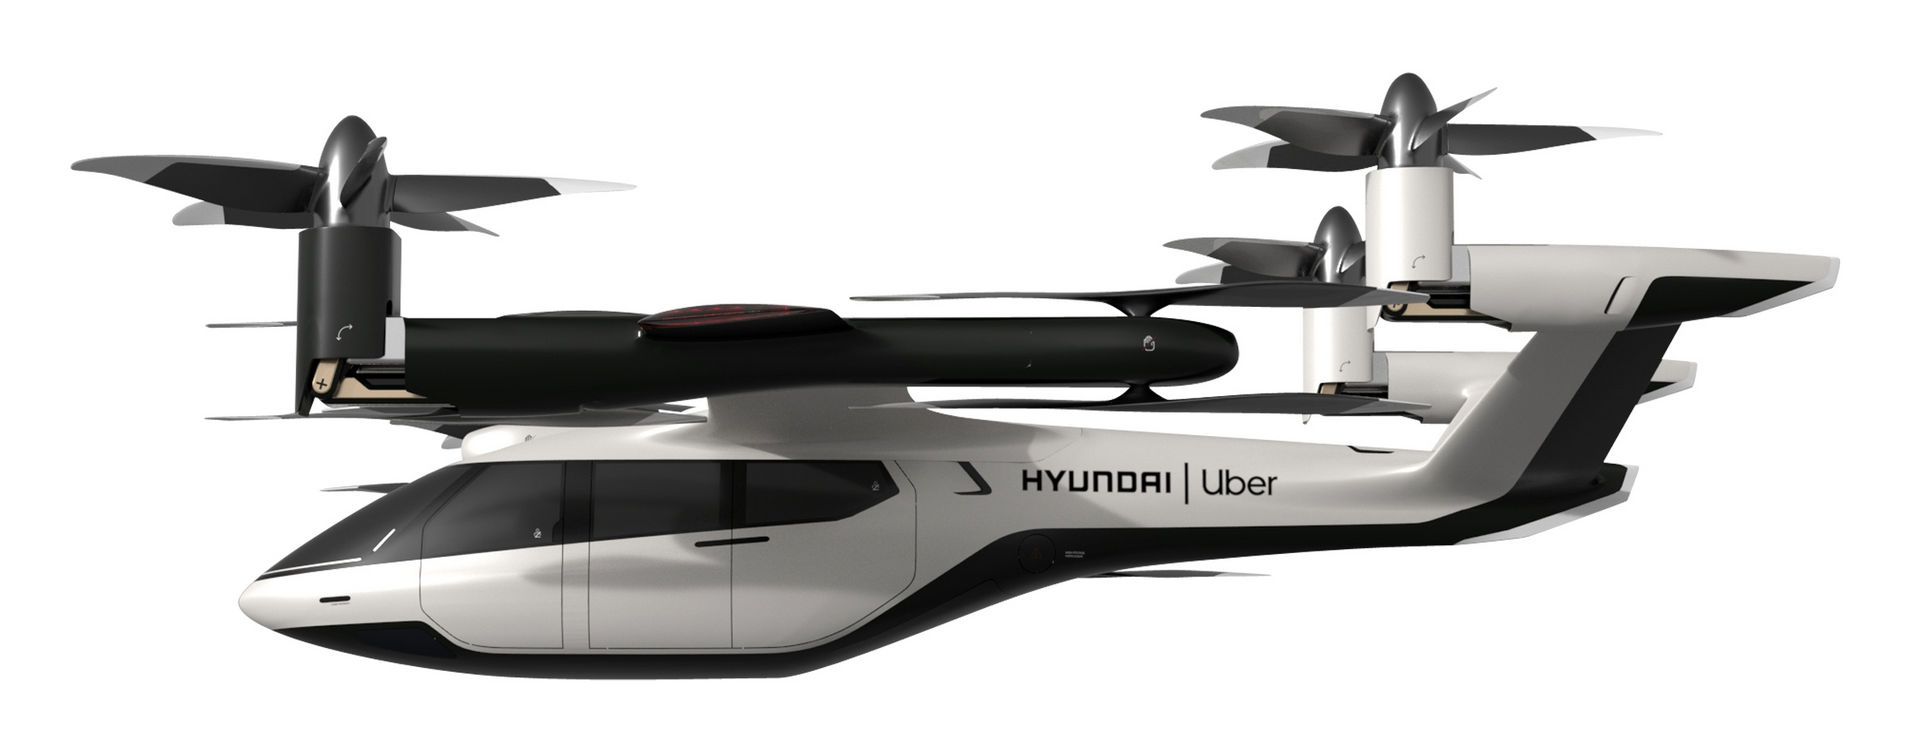 Hyundai uçan taksi işine el attı: Uber ile birlikte ilk modelini geliştirdi